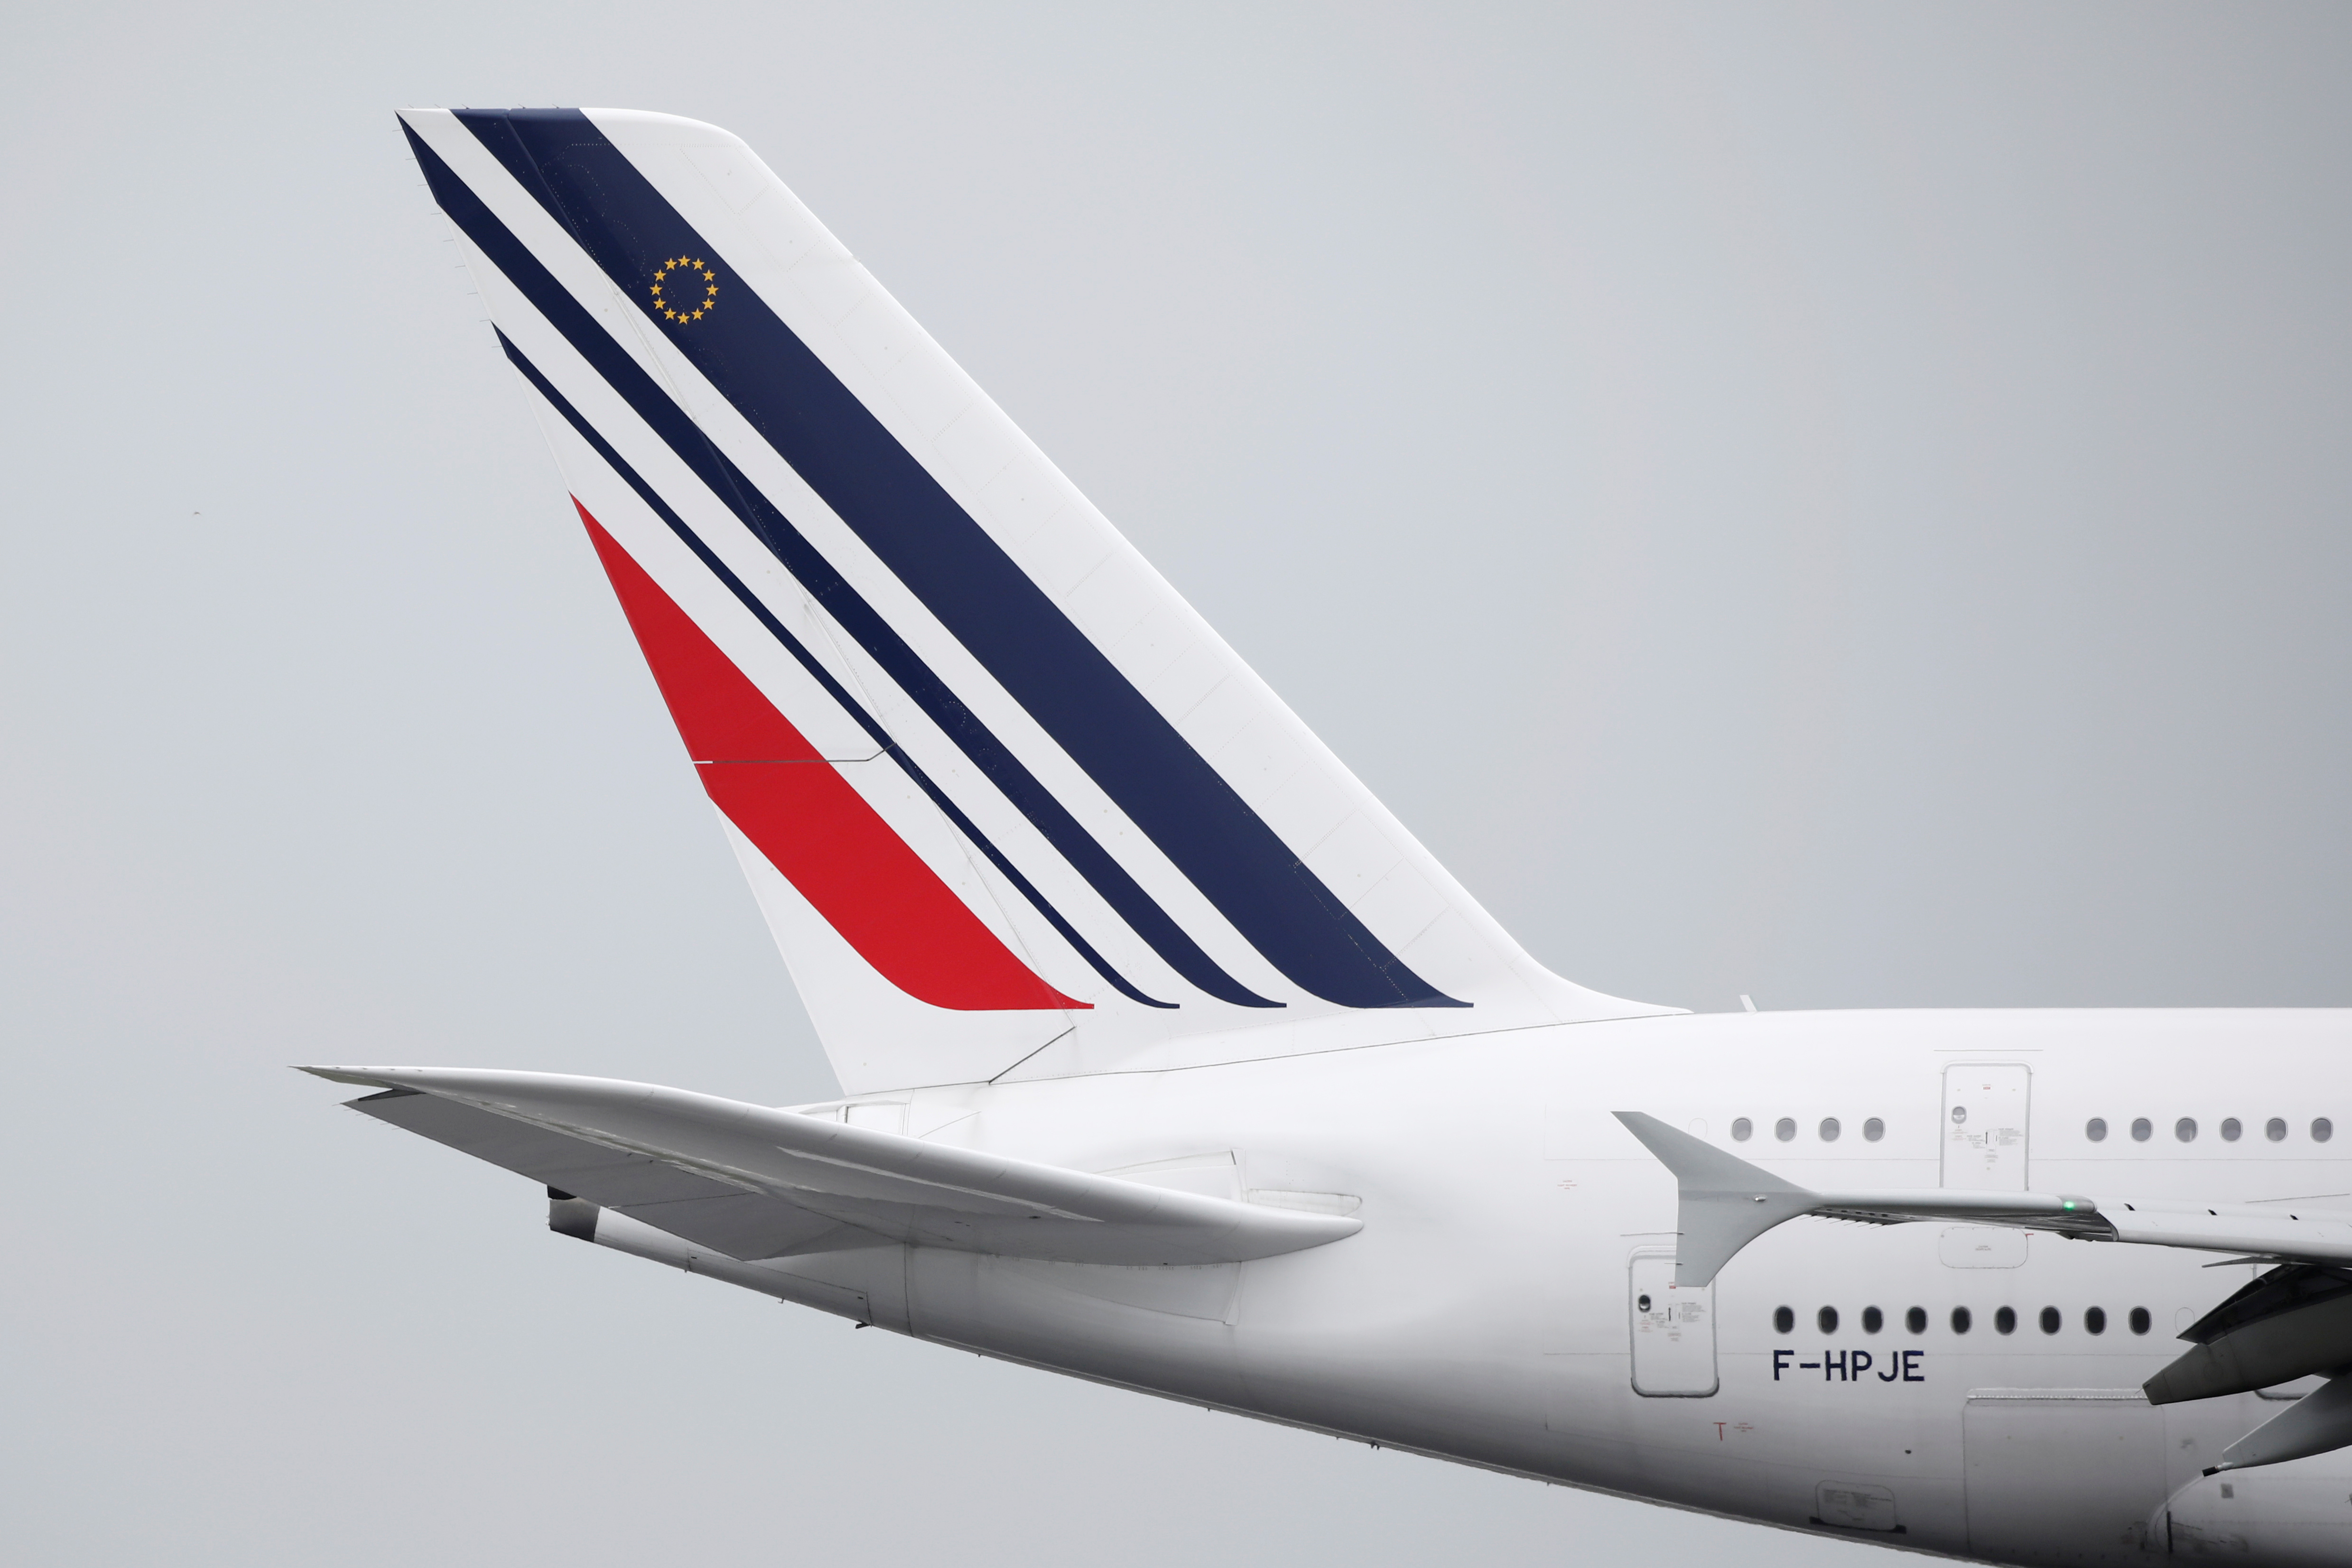 La suppression des vols intérieurs français est-elle légale ? Bruxelles enquête